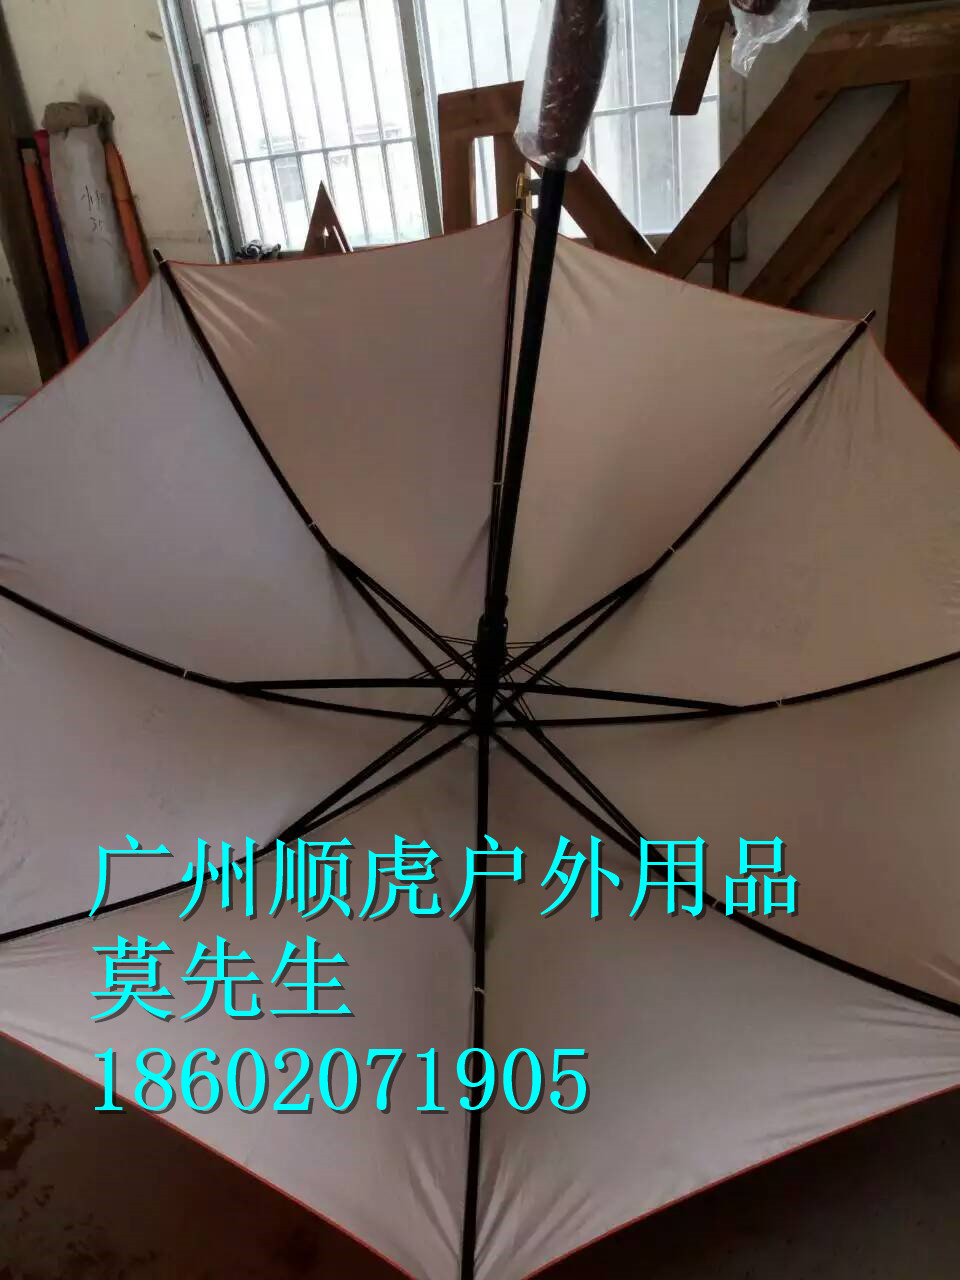 河南郑州广告伞供应商 质量保证 广东广州广告伞供应商 质量保证图片